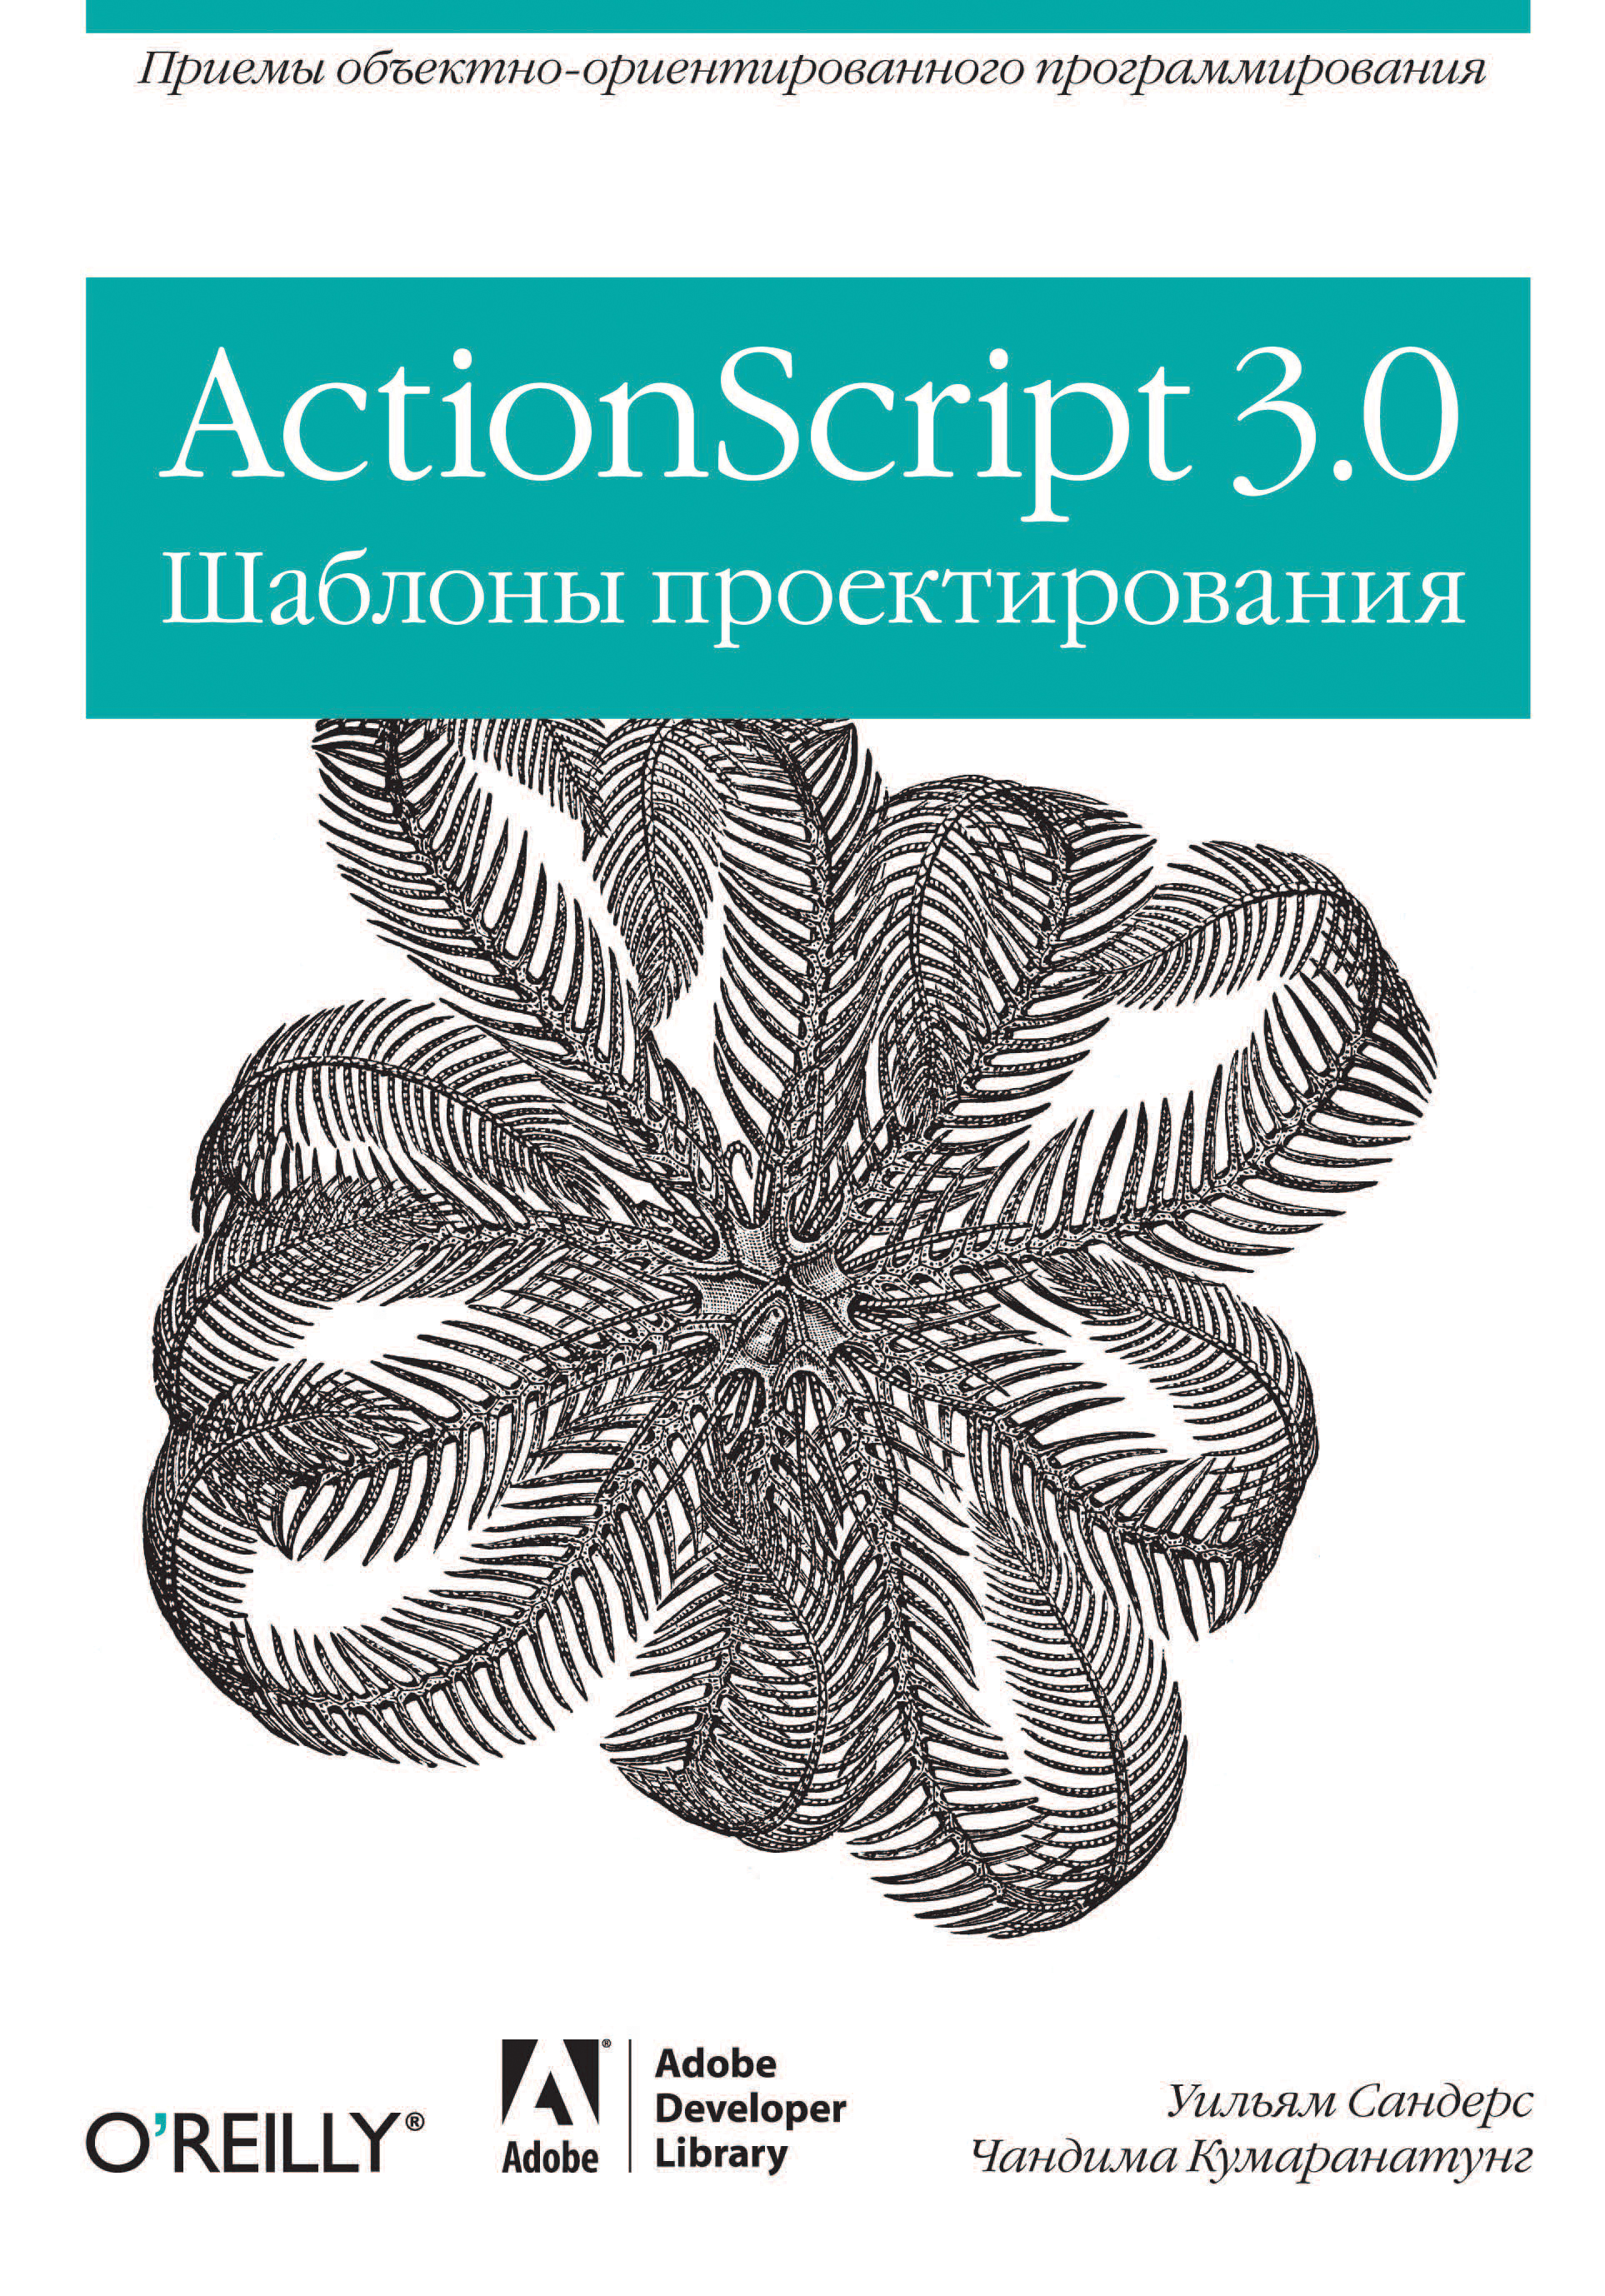 Книга  ActionScript 3.0. Шаблоны проектирования созданная Чандима Кумаранатунг, Уильям Сандерс, М. Нетов может относится к жанру зарубежная компьютерная литература, книги о компьютерах, компьютерная справочная литература, ОС и сети, программирование. Стоимость электронной книги ActionScript 3.0. Шаблоны проектирования с идентификатором 24499558 составляет 150.00 руб.